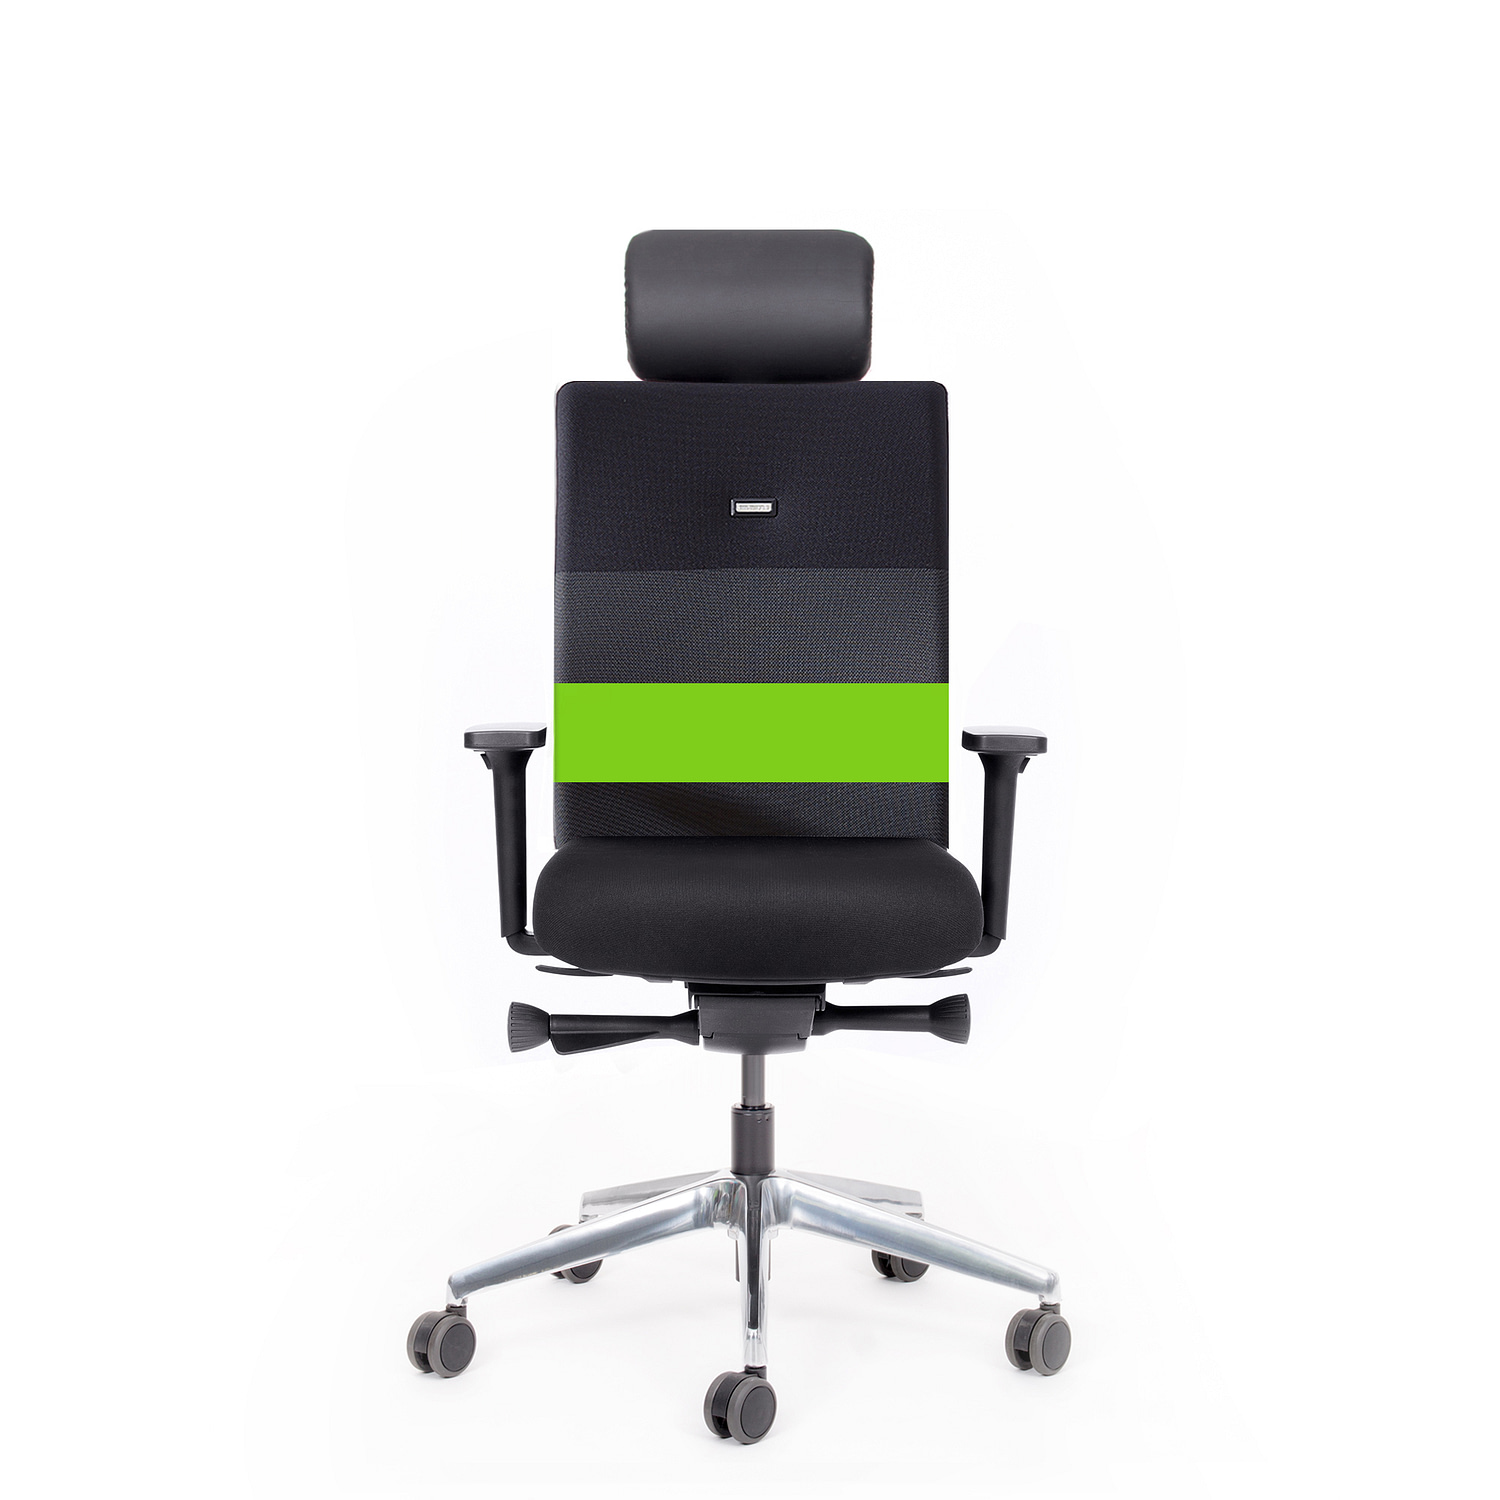 Abbildung: Bürostuhl mit gepolsterter Kopf- / Nacken-stütze, inkl. Synchronmechanik mit automatischer Sitz-neigeverstellung, 4-fach verstellbaren Armlehnen, 10 Jahre Garantie, mehrfarbig